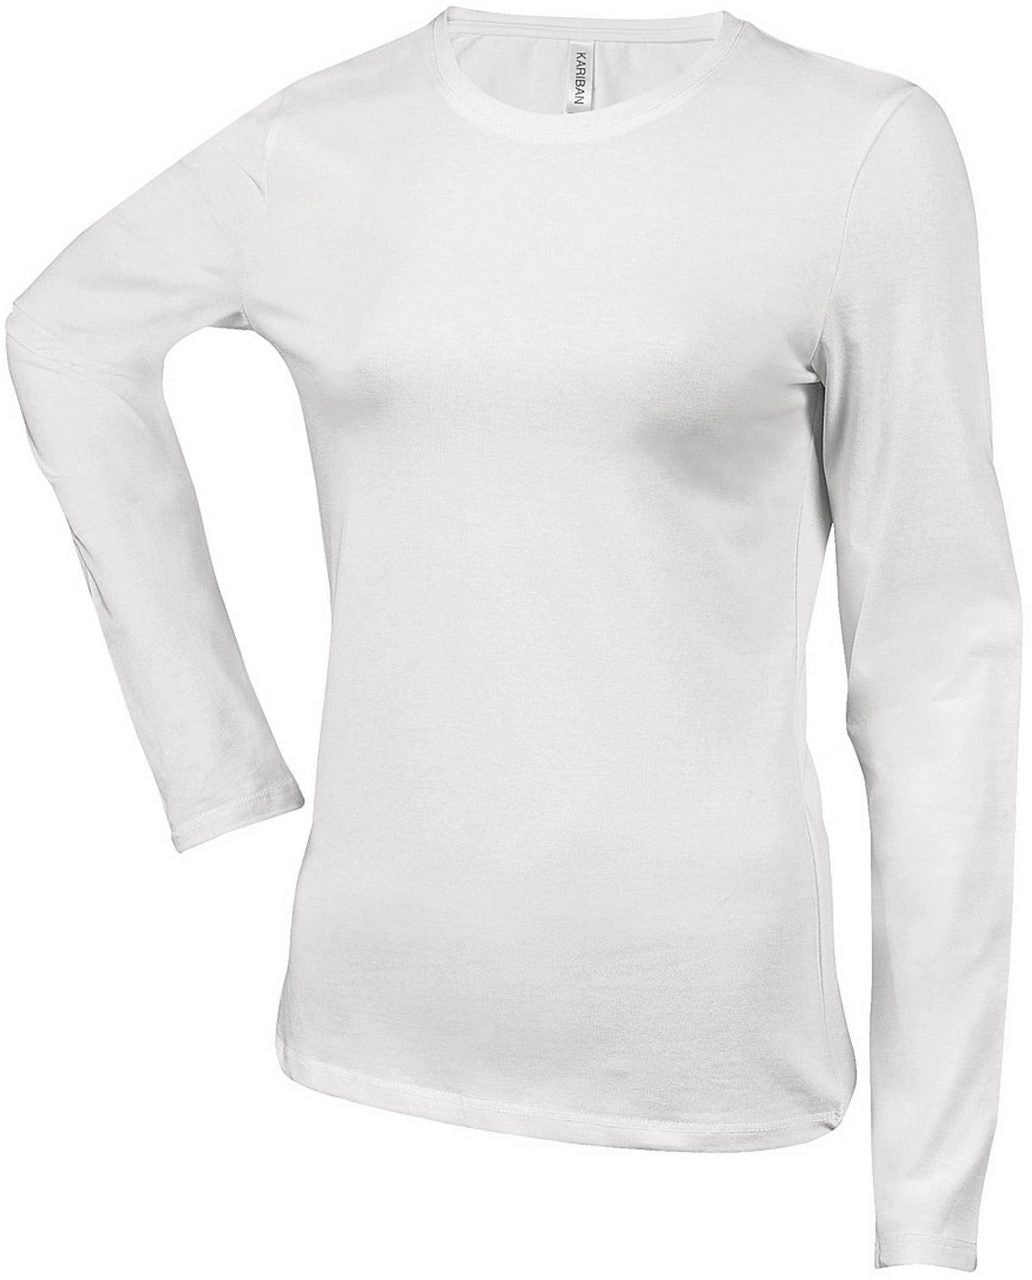 CARLA - Tricou Pentru Femei Tricou Diferite Culori/Dimensiuni B52